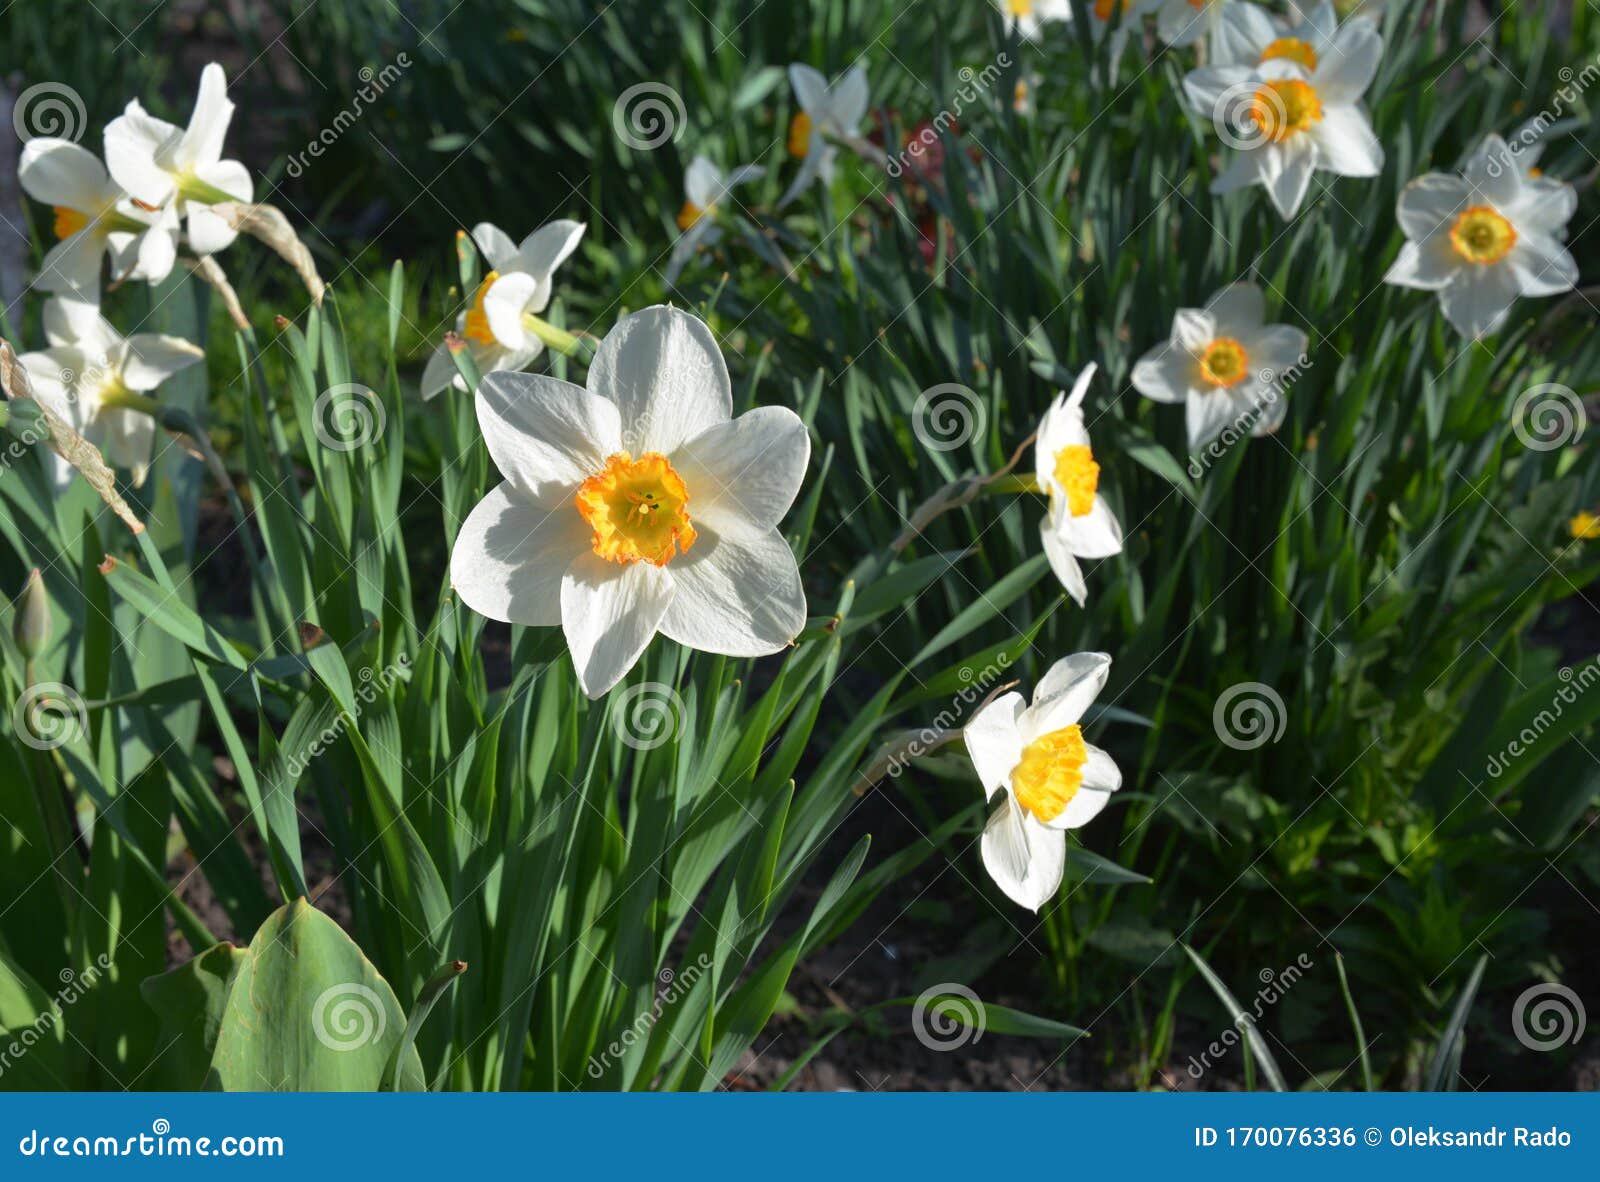 家中春花床上的水仙花 水仙库存照片 图片包括有新鲜 视图 叶子 模式 庭院 水仙 花瓣